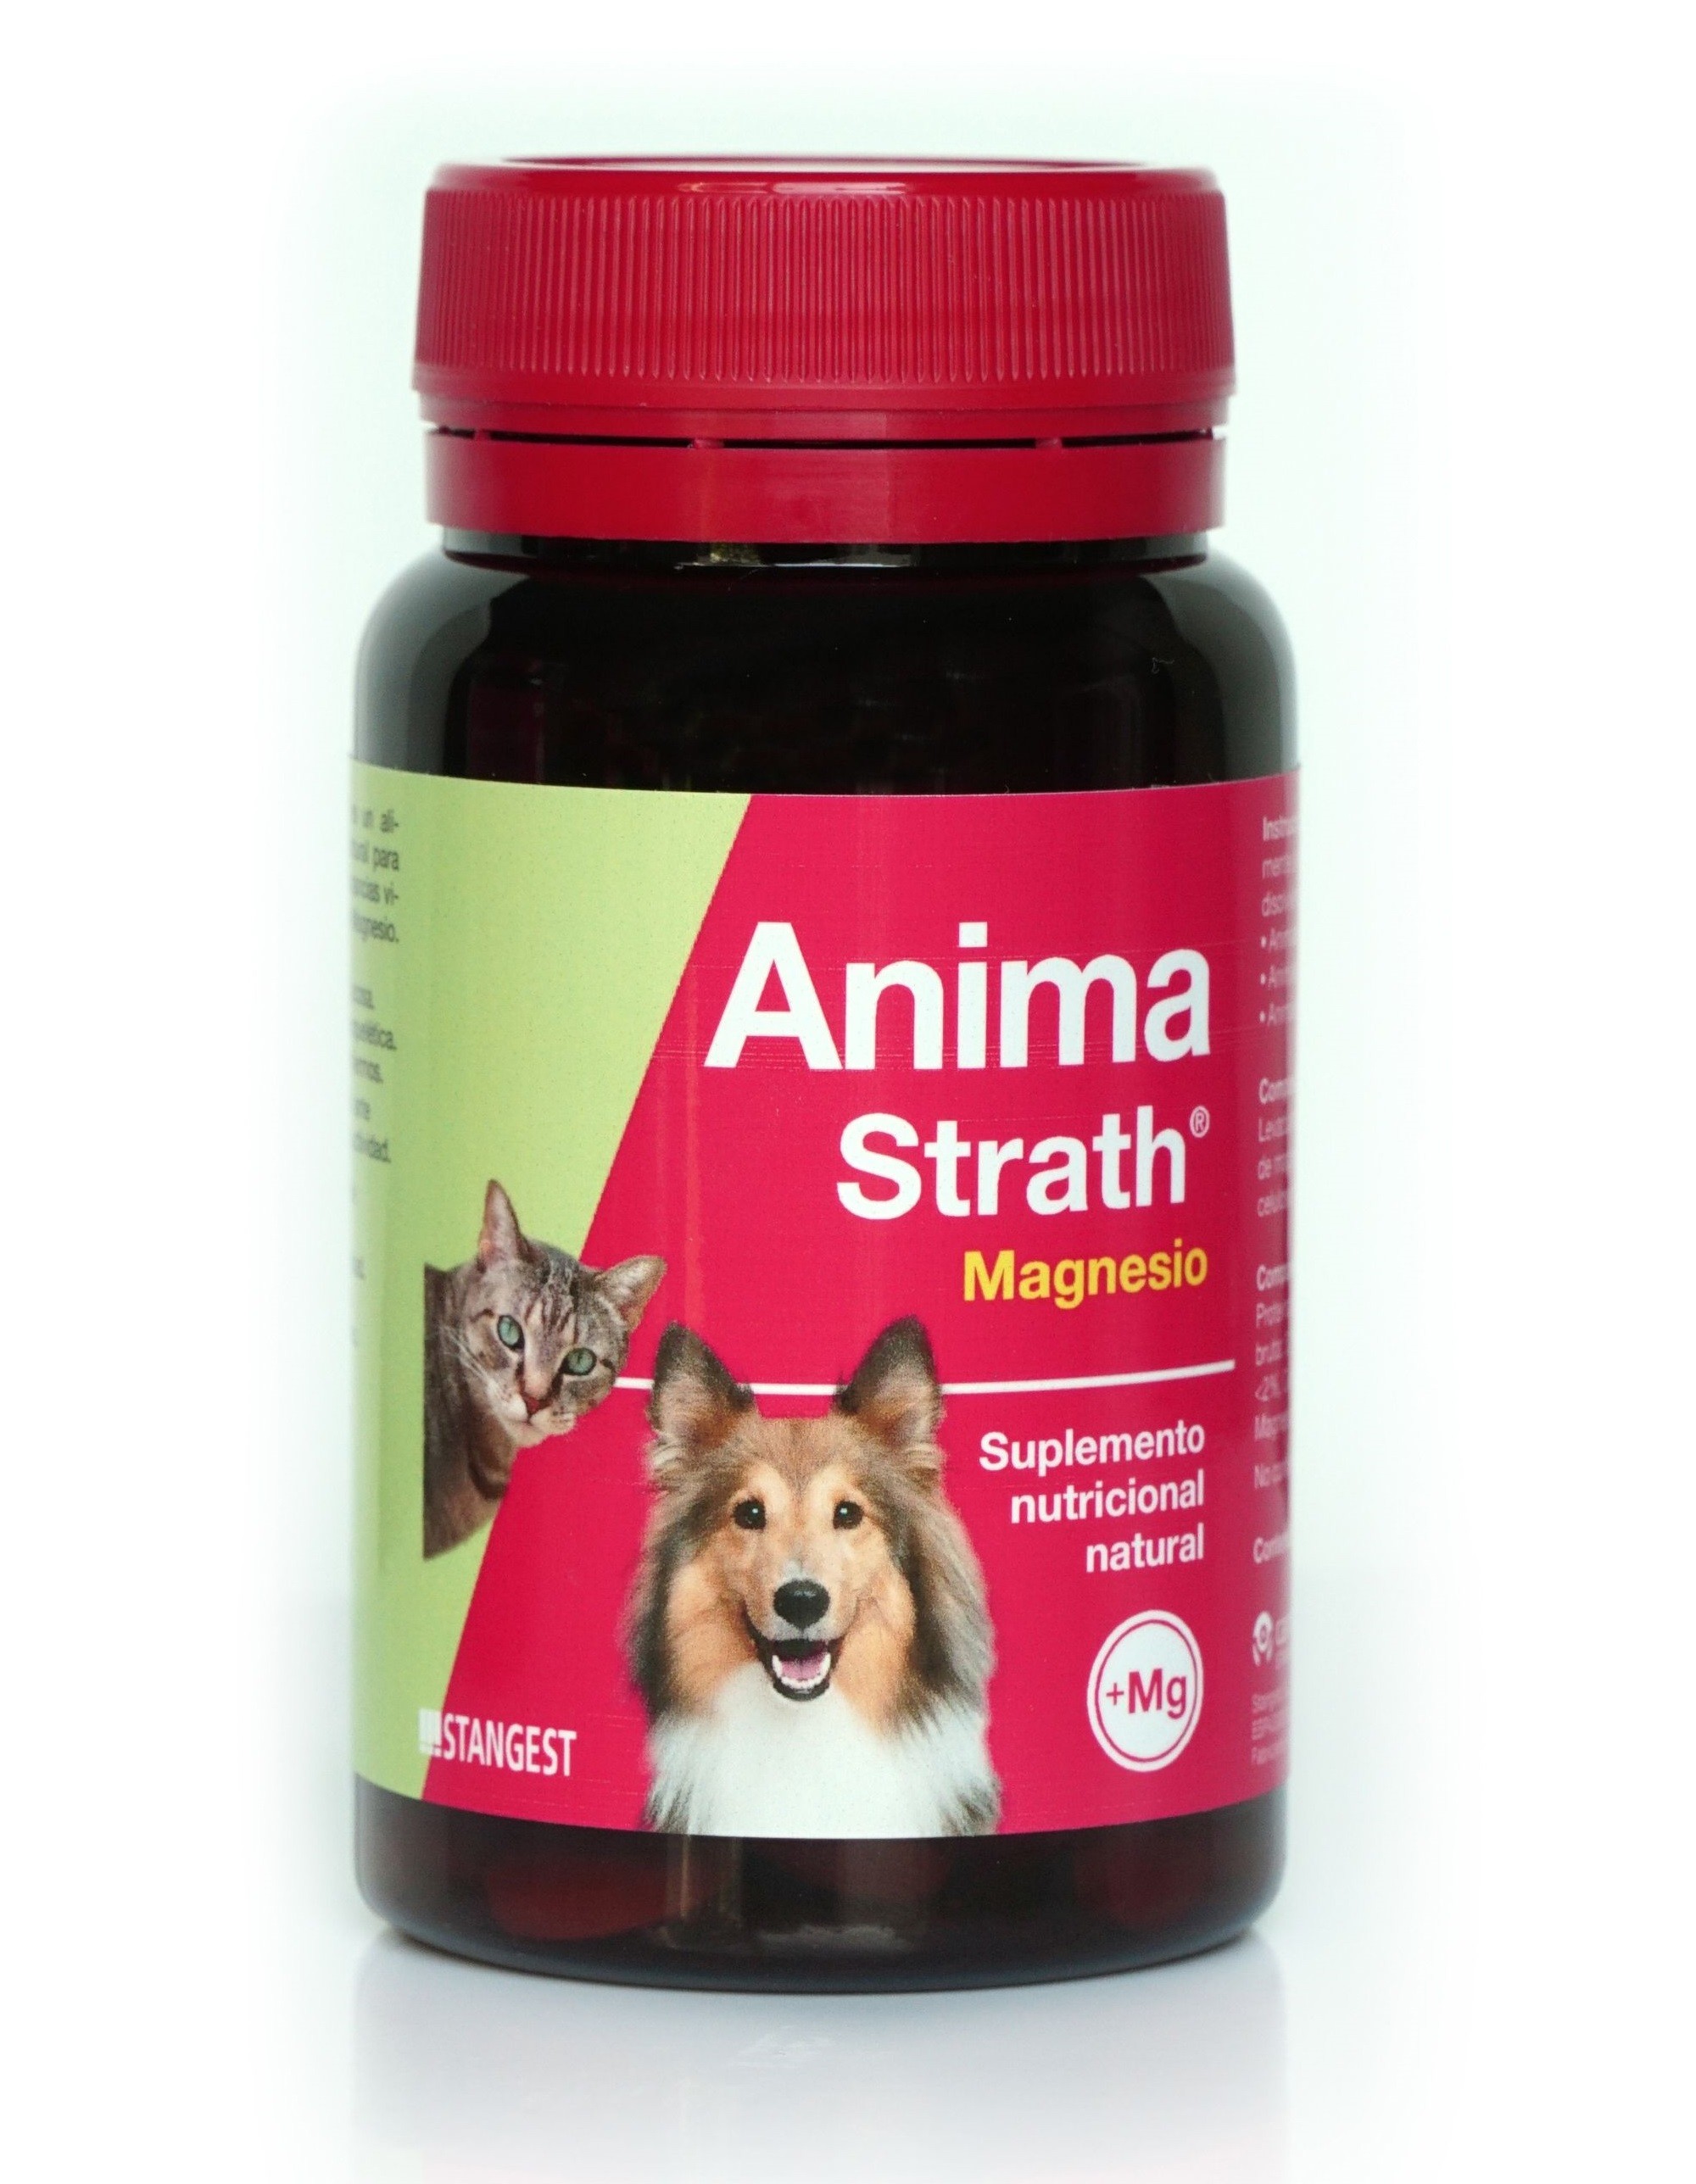 ANIMA STRATH MAGNESIO Complemento y Mineral Perros, Gatos y Otras Mascotas